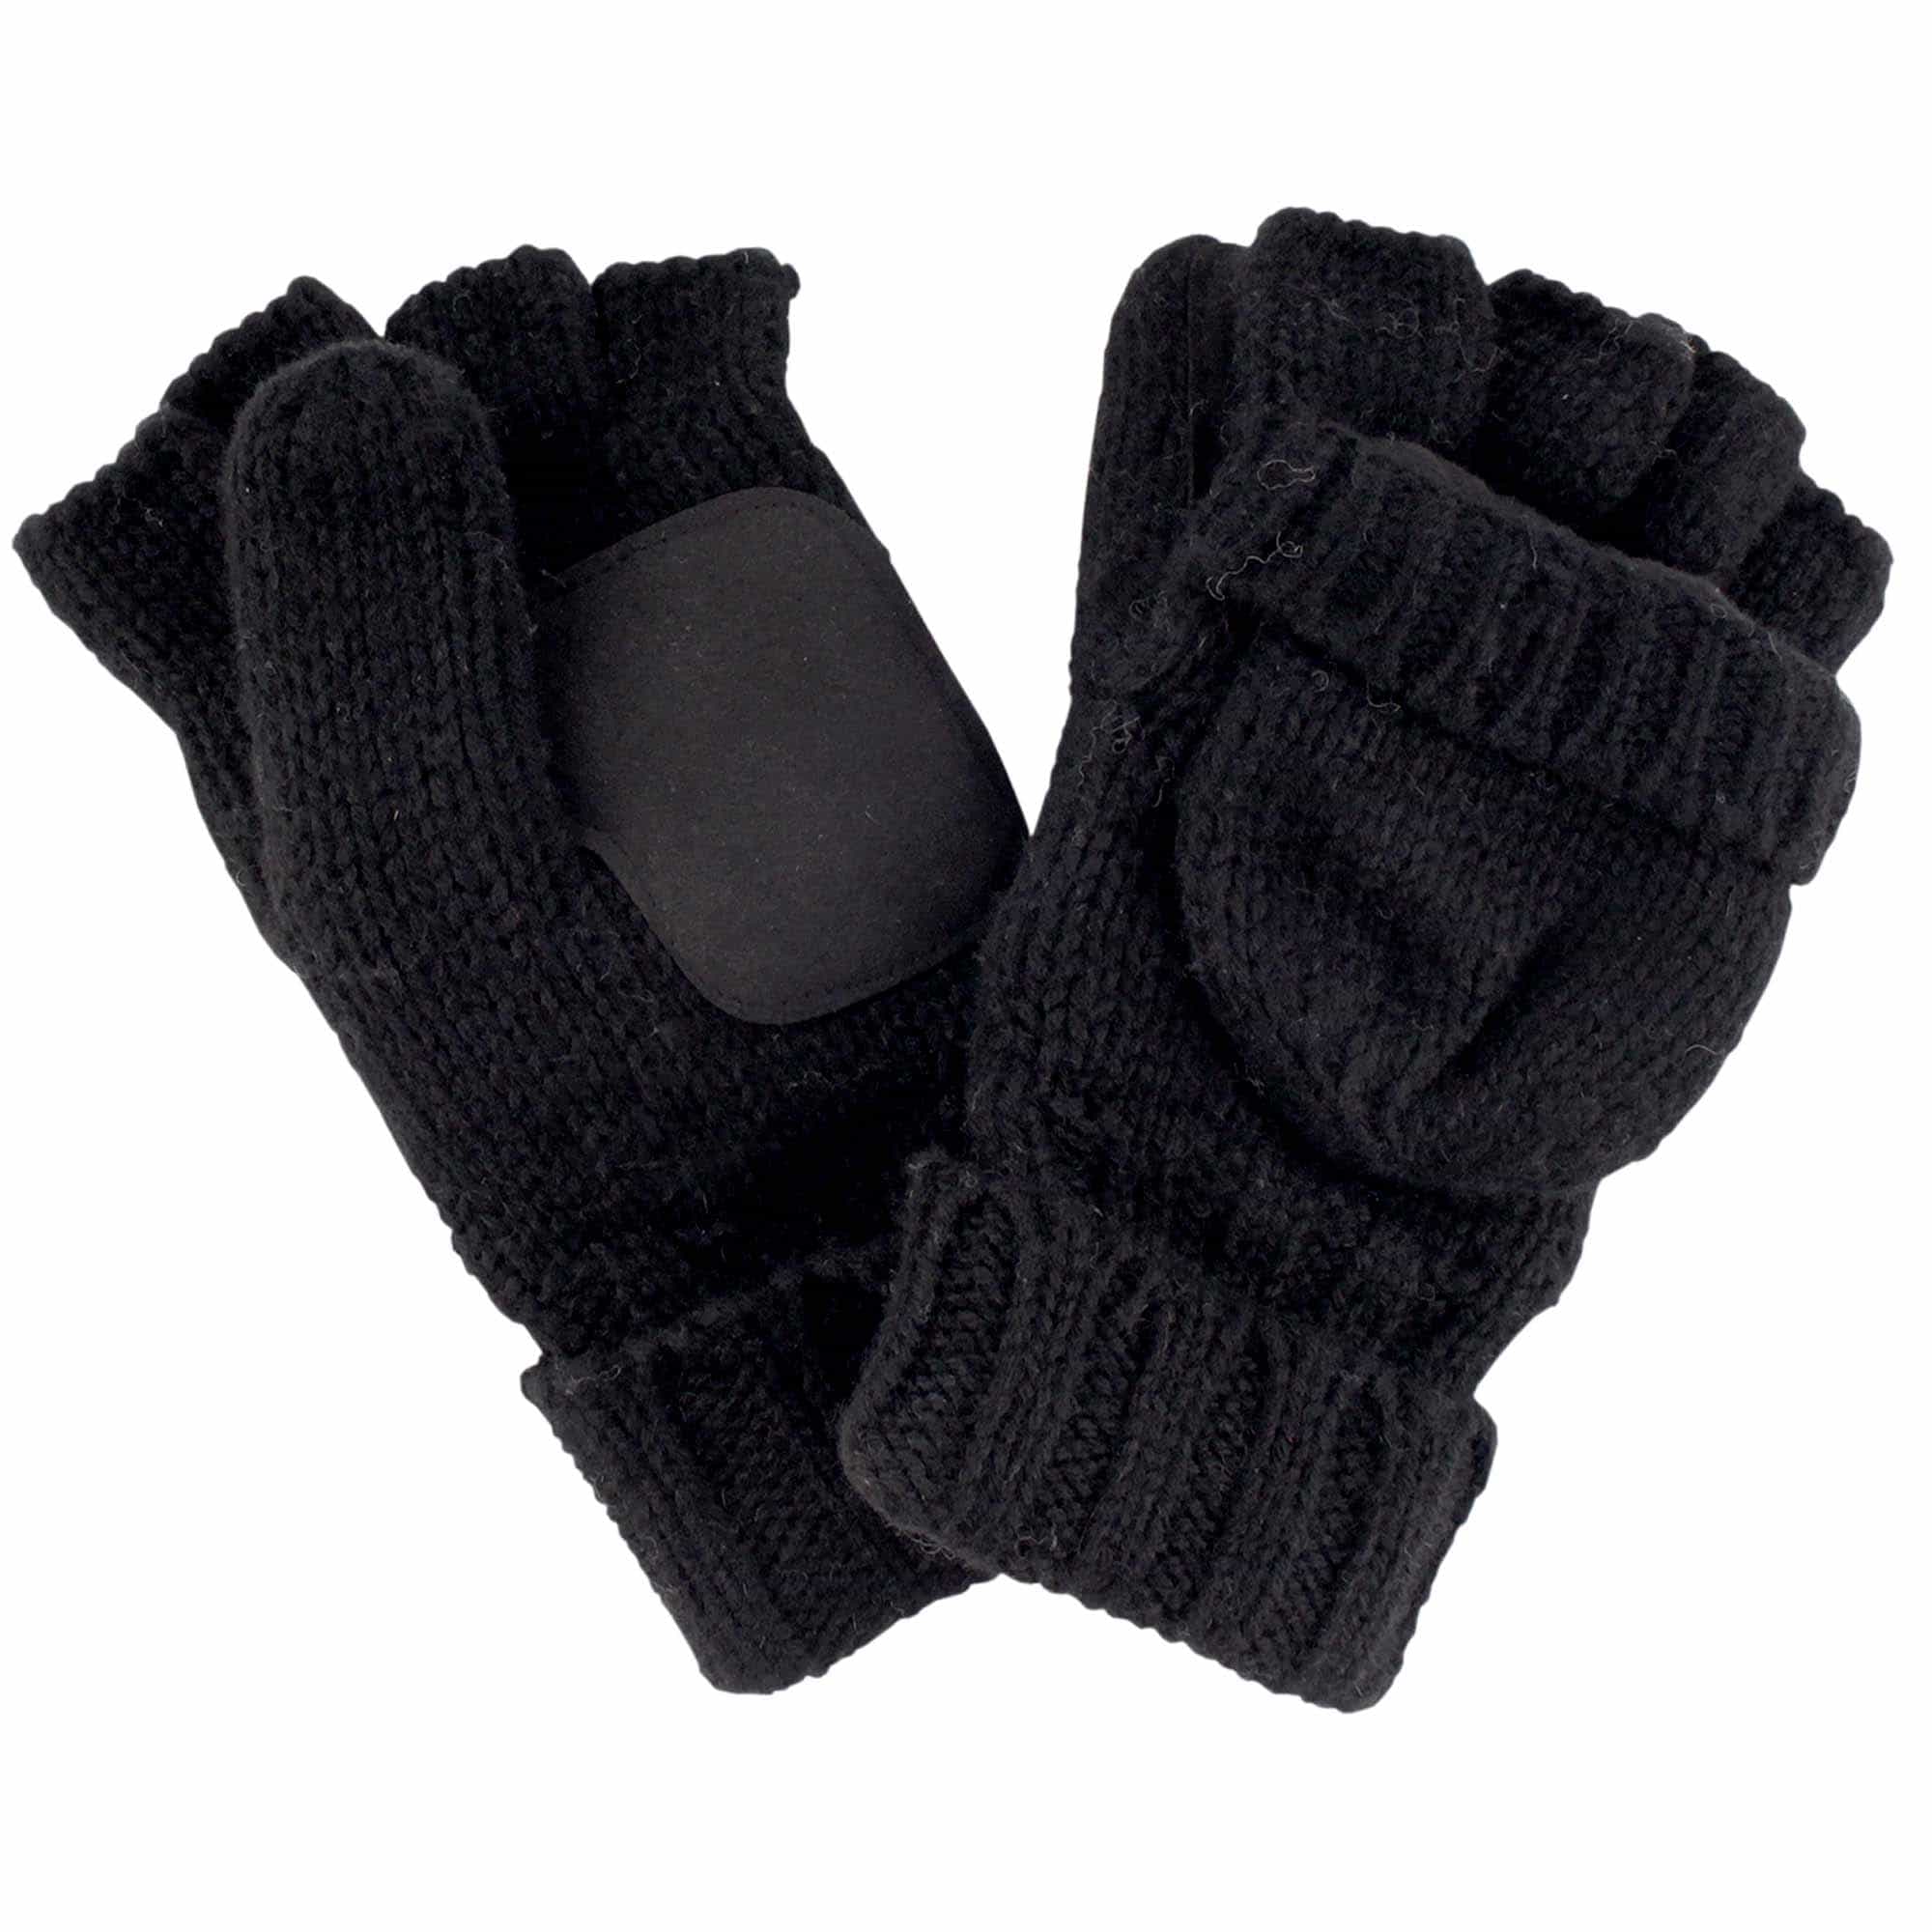 Half Combo Winter Glove Knitted Fingerless Mittens Convertible